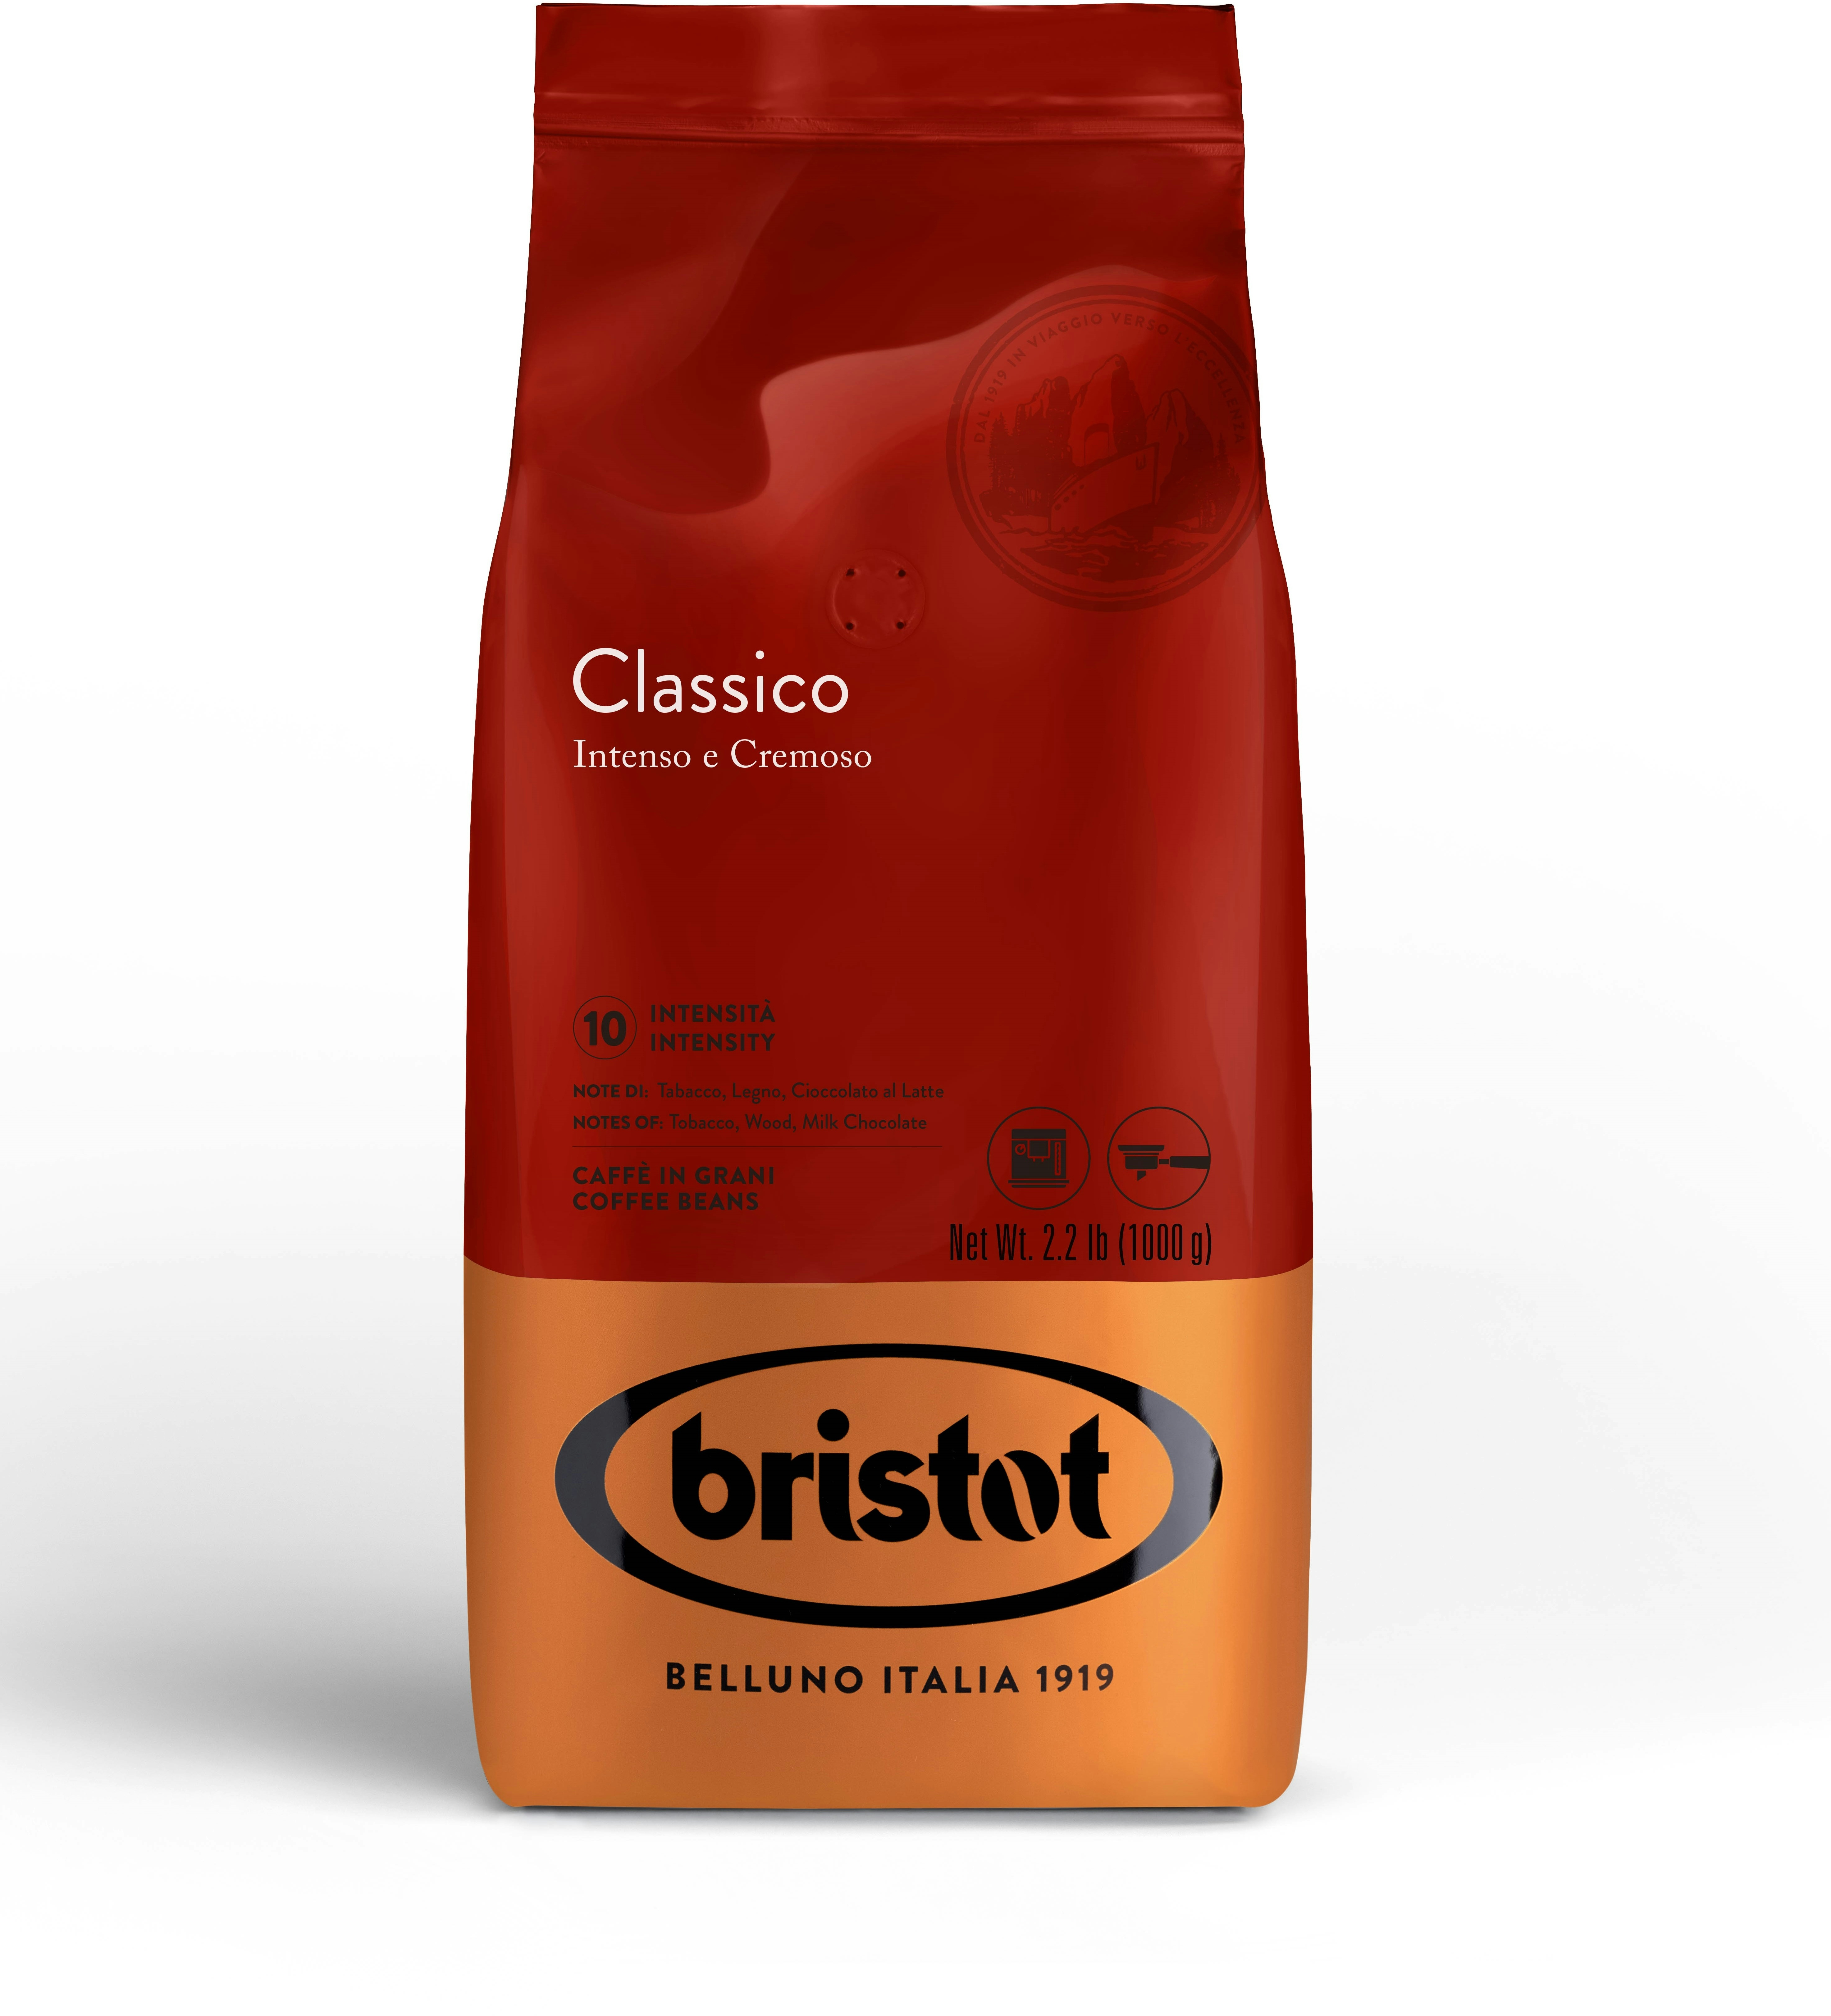 Bristot Classico Bohnen (1kg)